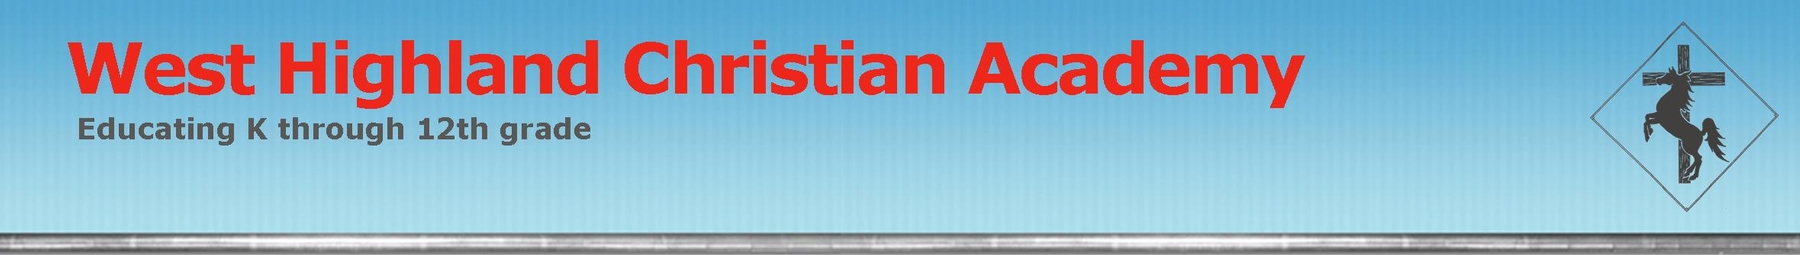 West Highland Christian Academy